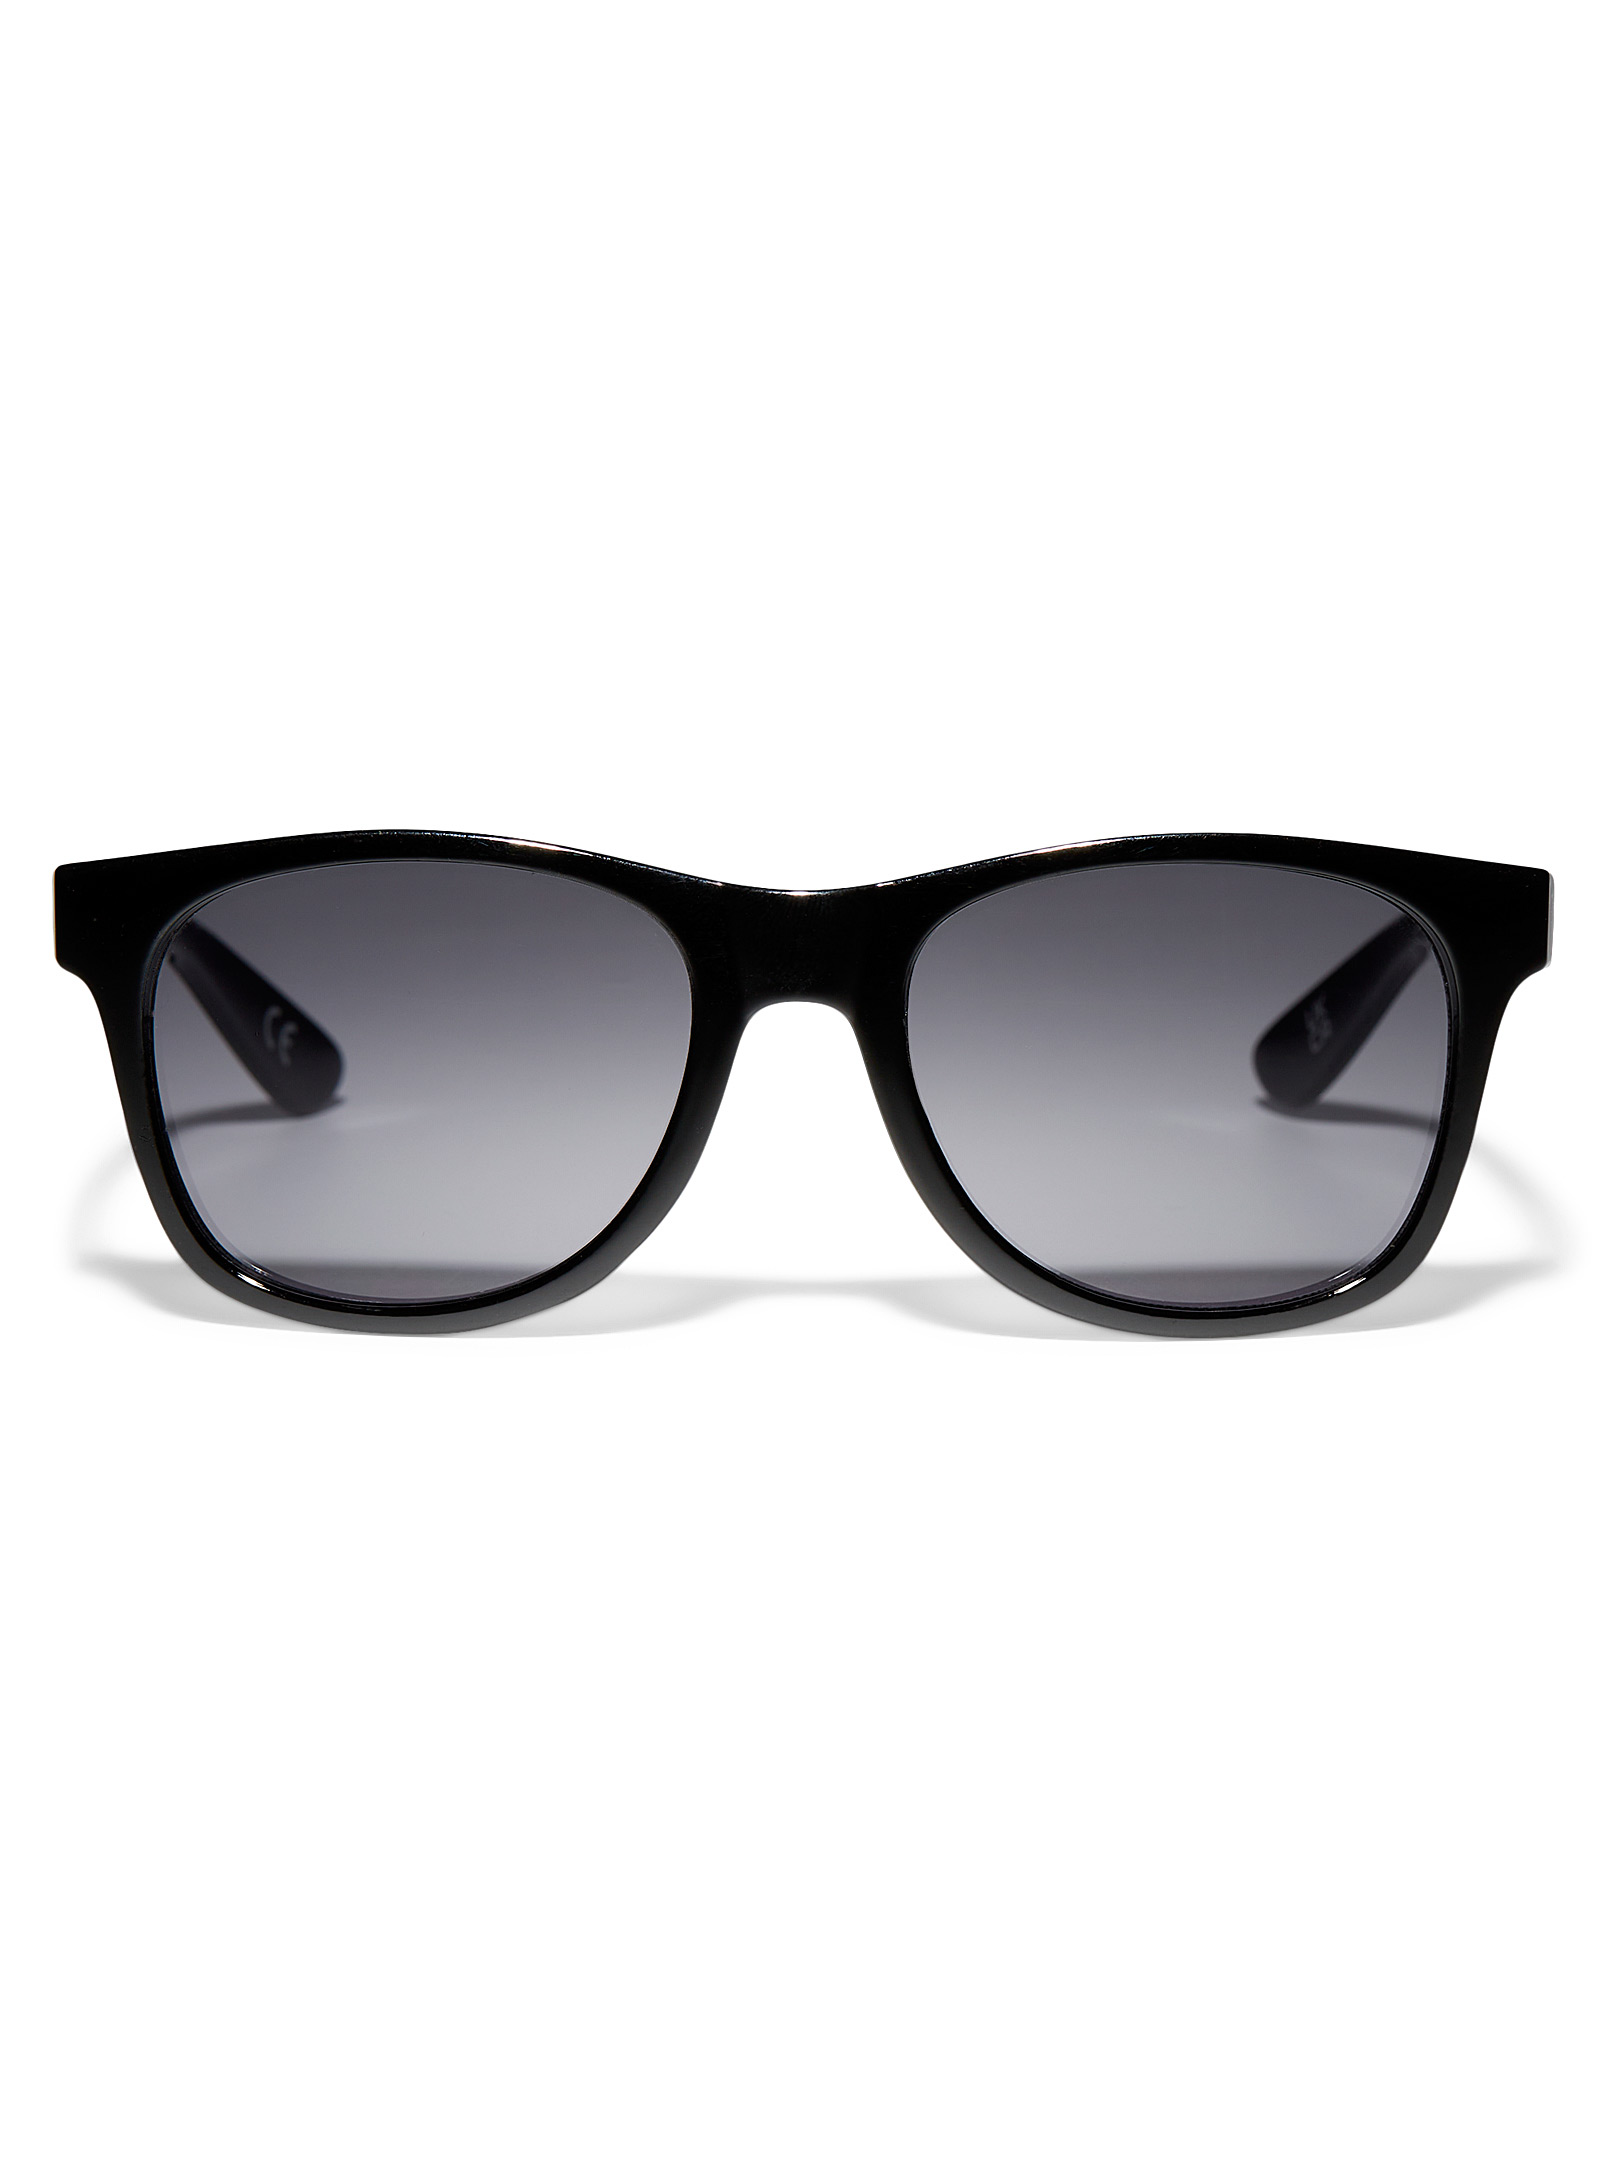 Vans Spicoli Sunglasses In Black